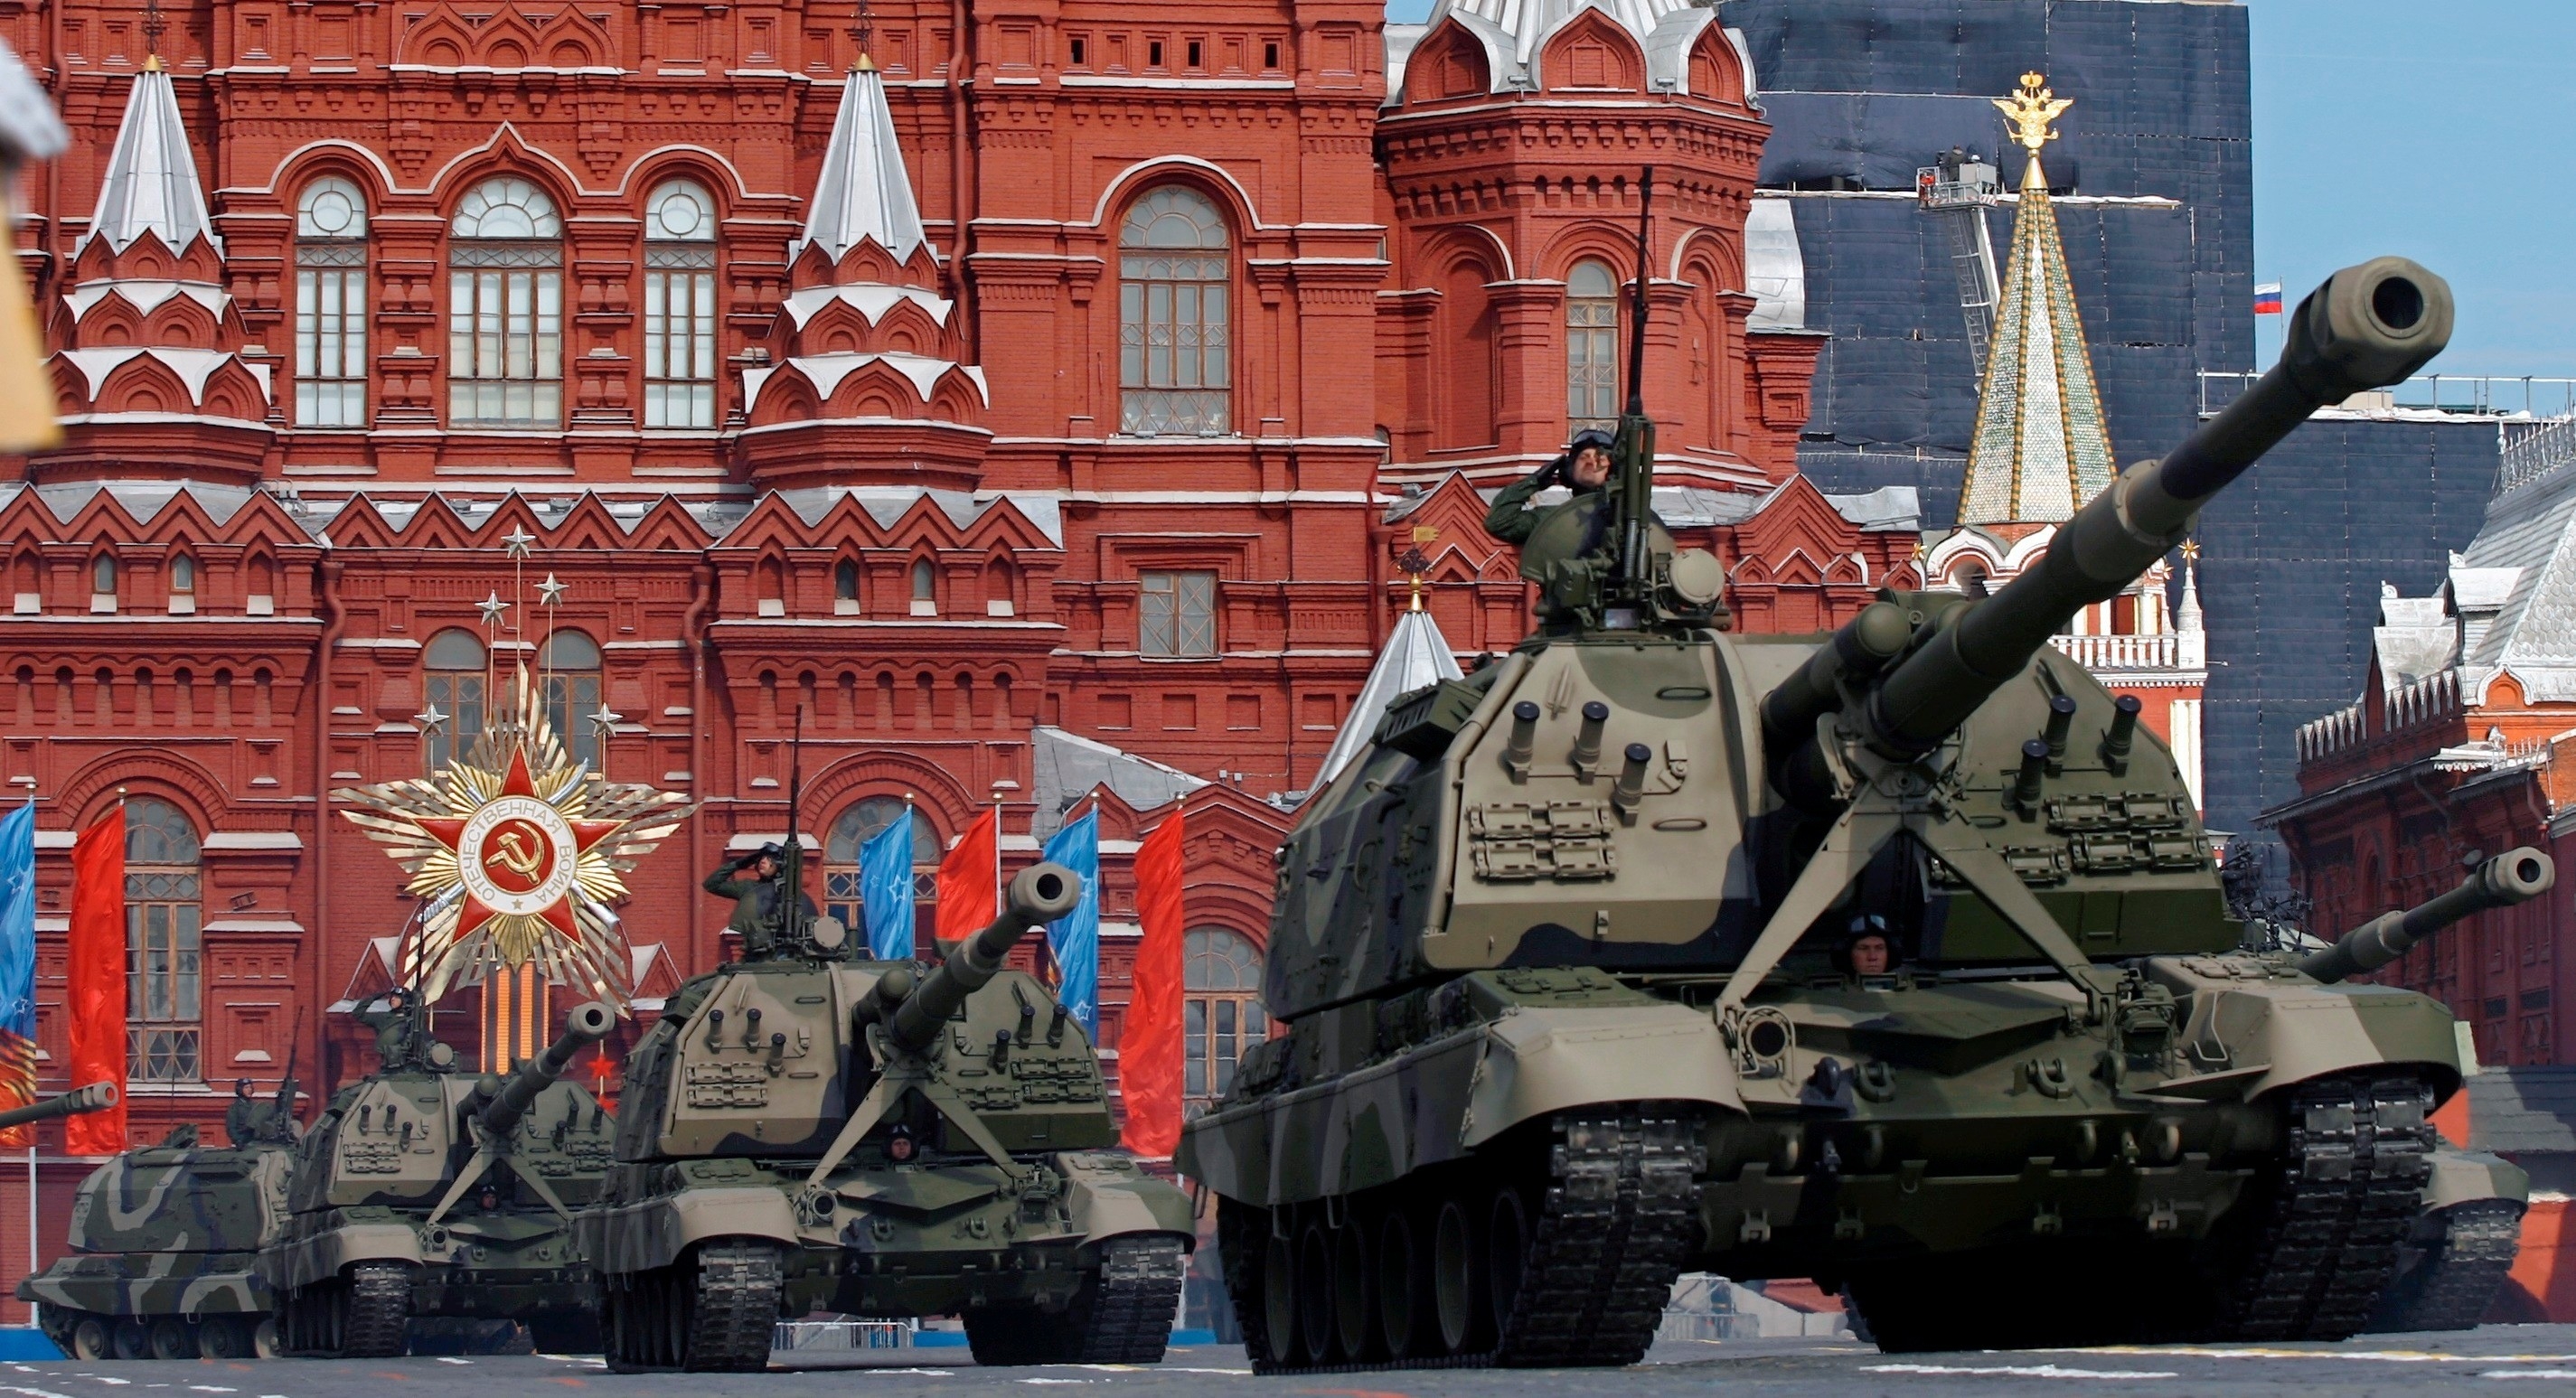 Մոսկվայում Հաղթանակի զորահանդեսին կմասնակցեն արտասահմանյան 15 բանակների ներկայացուցիչներ